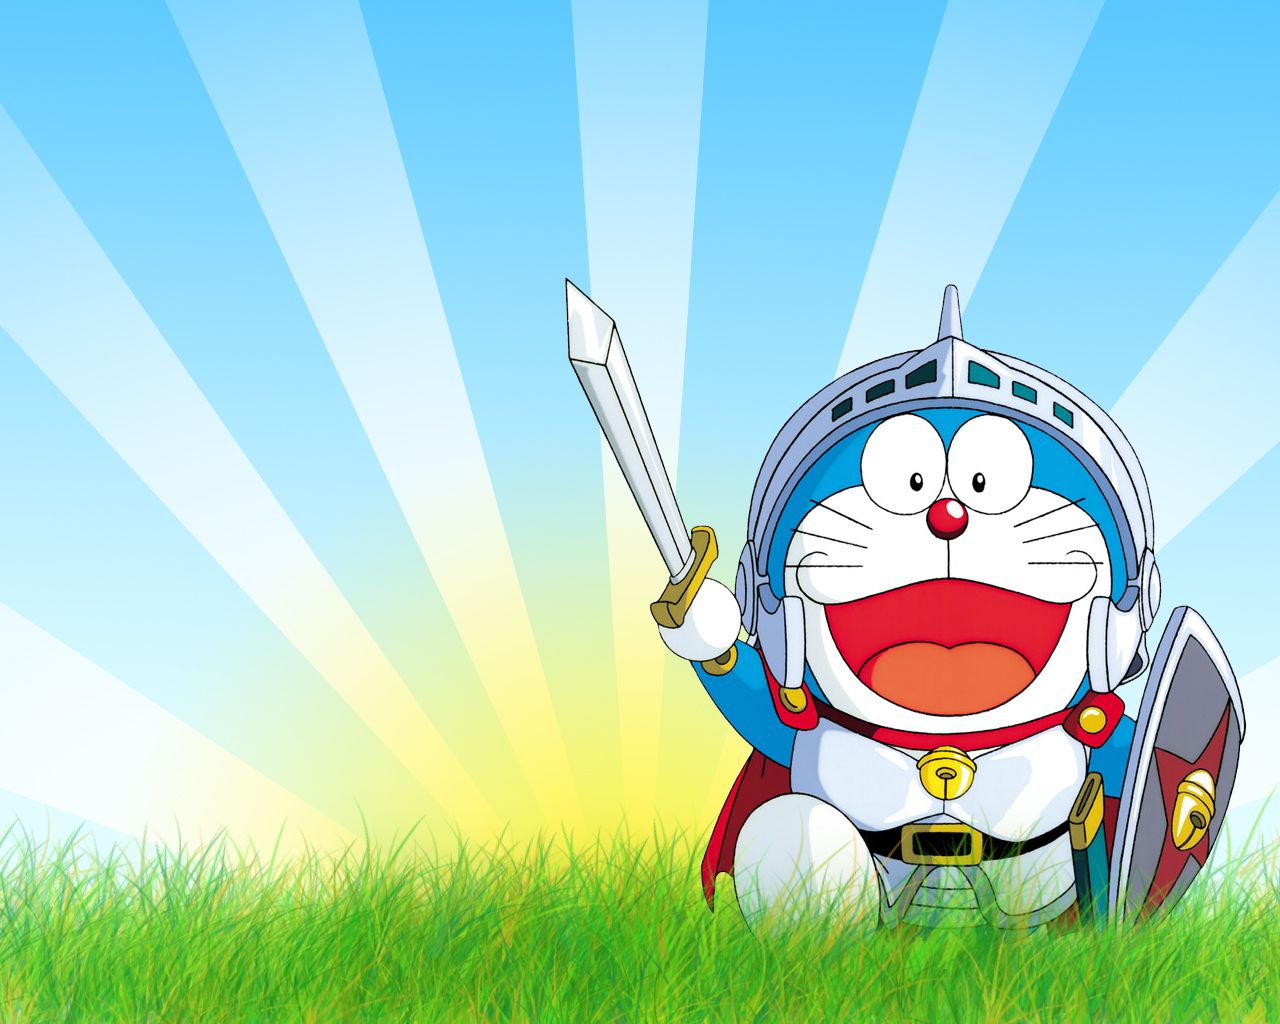 Dựa trên bộ truyện nổi tiếng, Doraemon đã trở thành một nhân vật được yêu thích của nhiều thế hệ trẻ em. Hãy đến với những hình ảnh Doraemon để cùng tận hưởng những giây phút vui nhộn và đáng yêu bên cậu bạn tinh nghịch này.